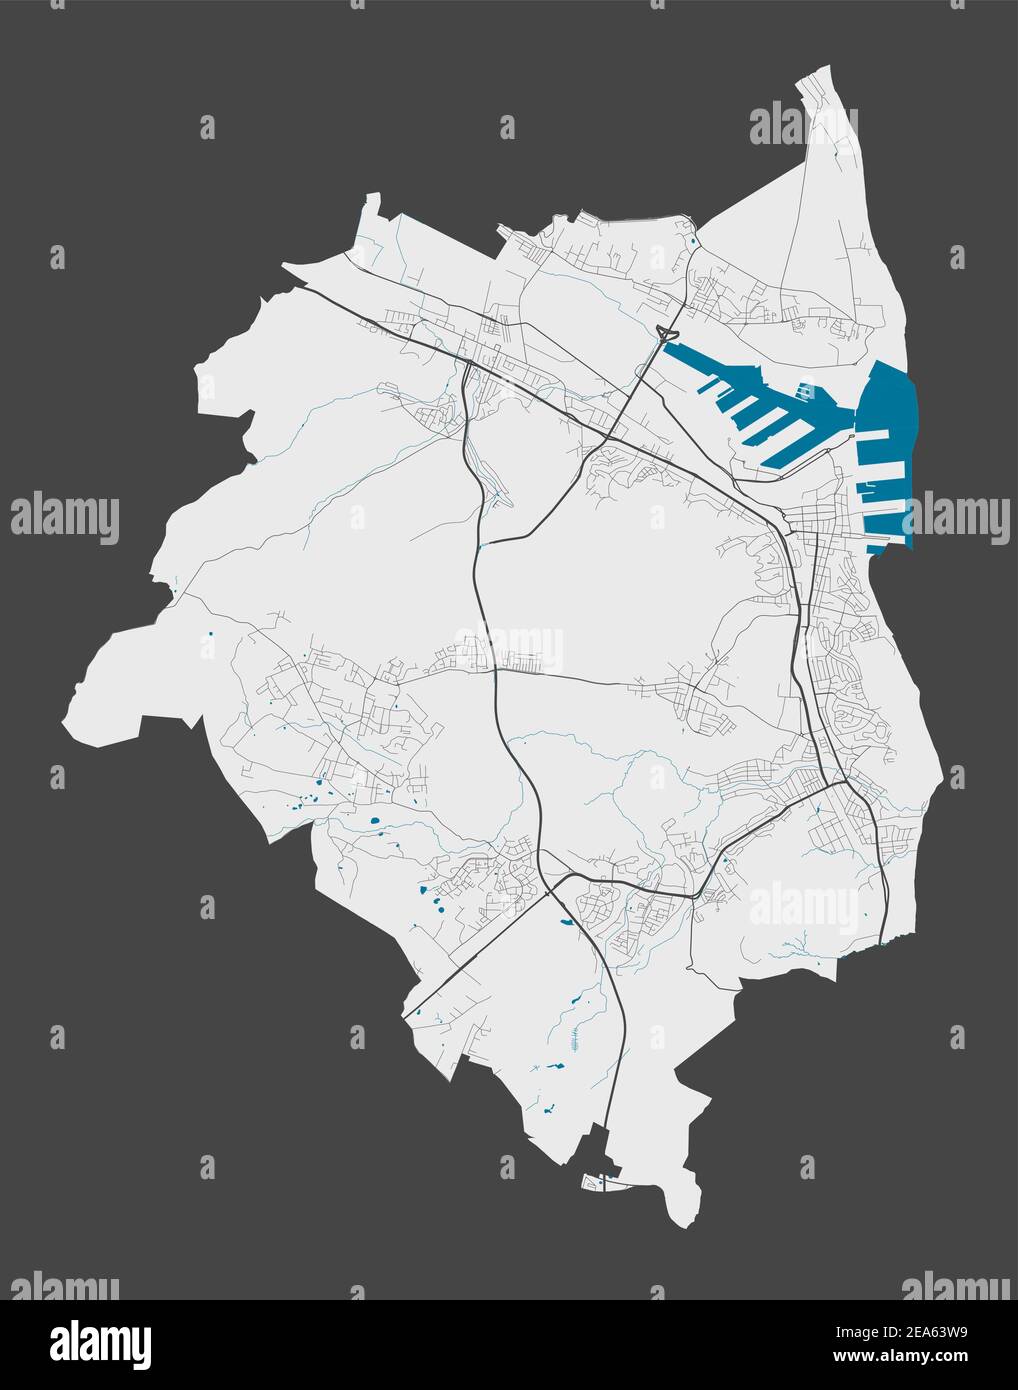 Mapa de Gdynia. Mapa detallado del área administrativa de la ciudad de Gdynia. Panorama urbano. Ilustración vectorial libre de derechos de autor. Mapa con carreteras, calles, Ilustración del Vector